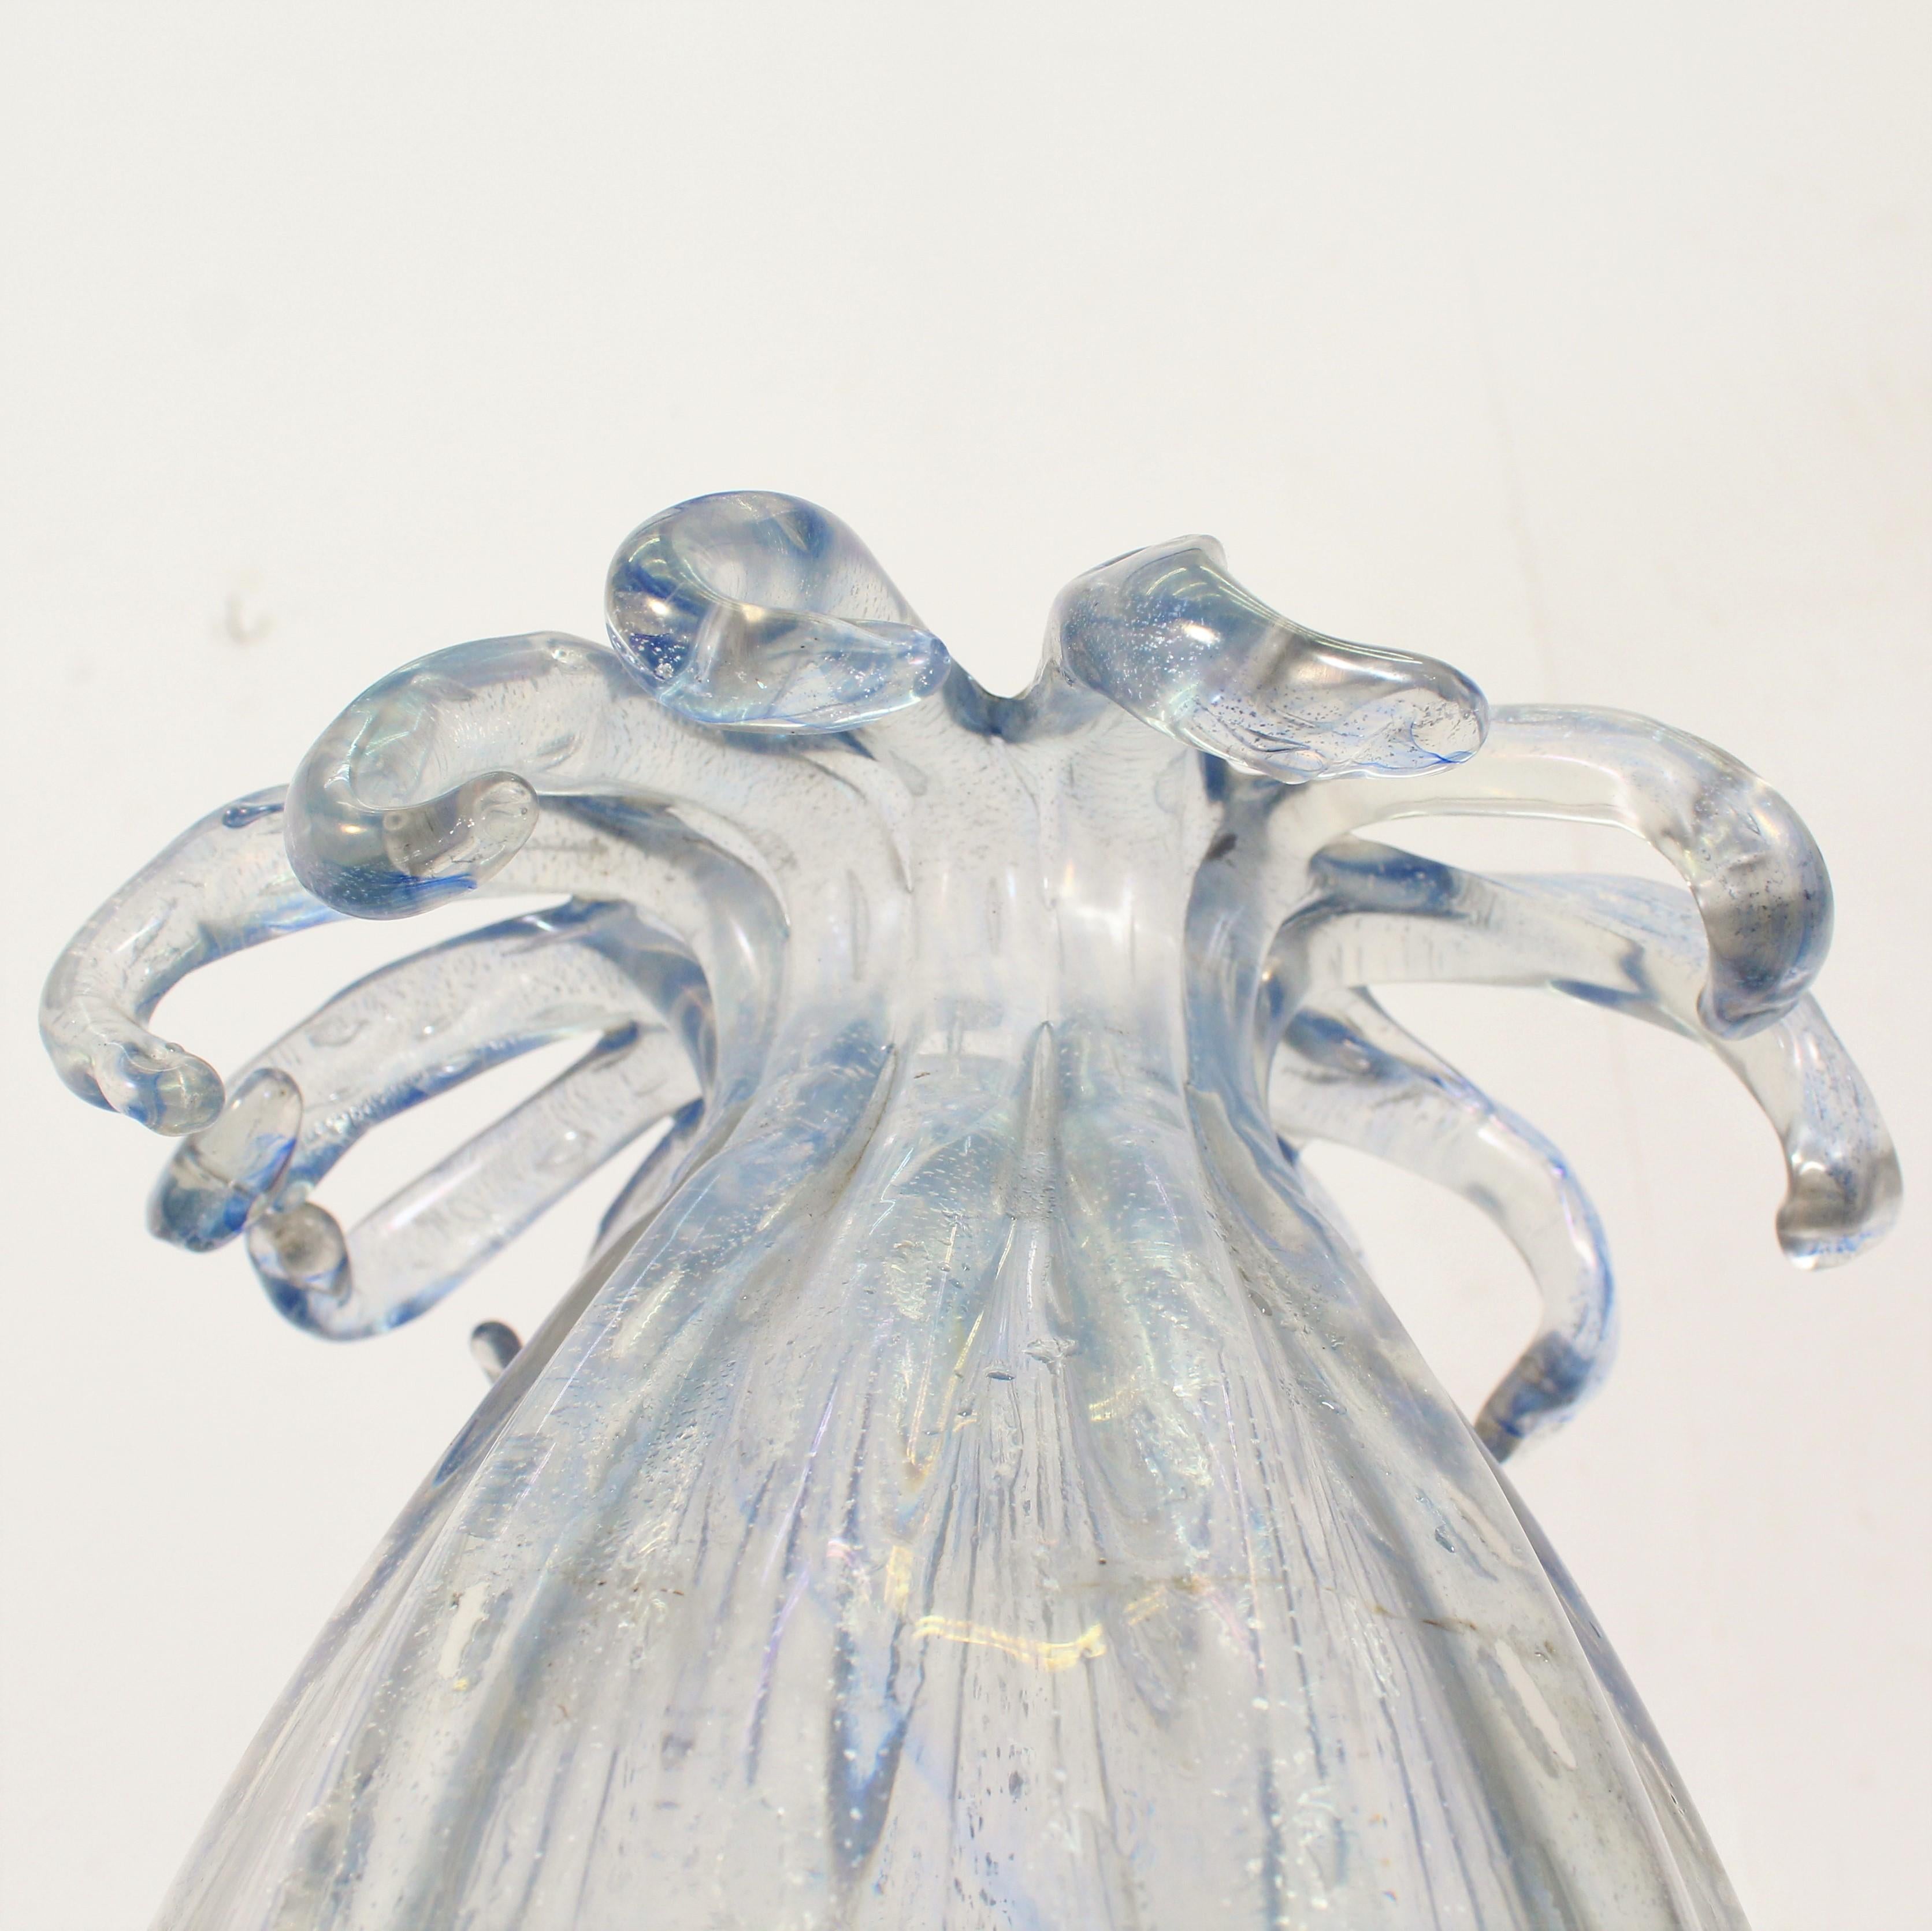 Italian Midcentury Ercole Barovier Murano Iridescent Glass Vase, Italy, 1940s